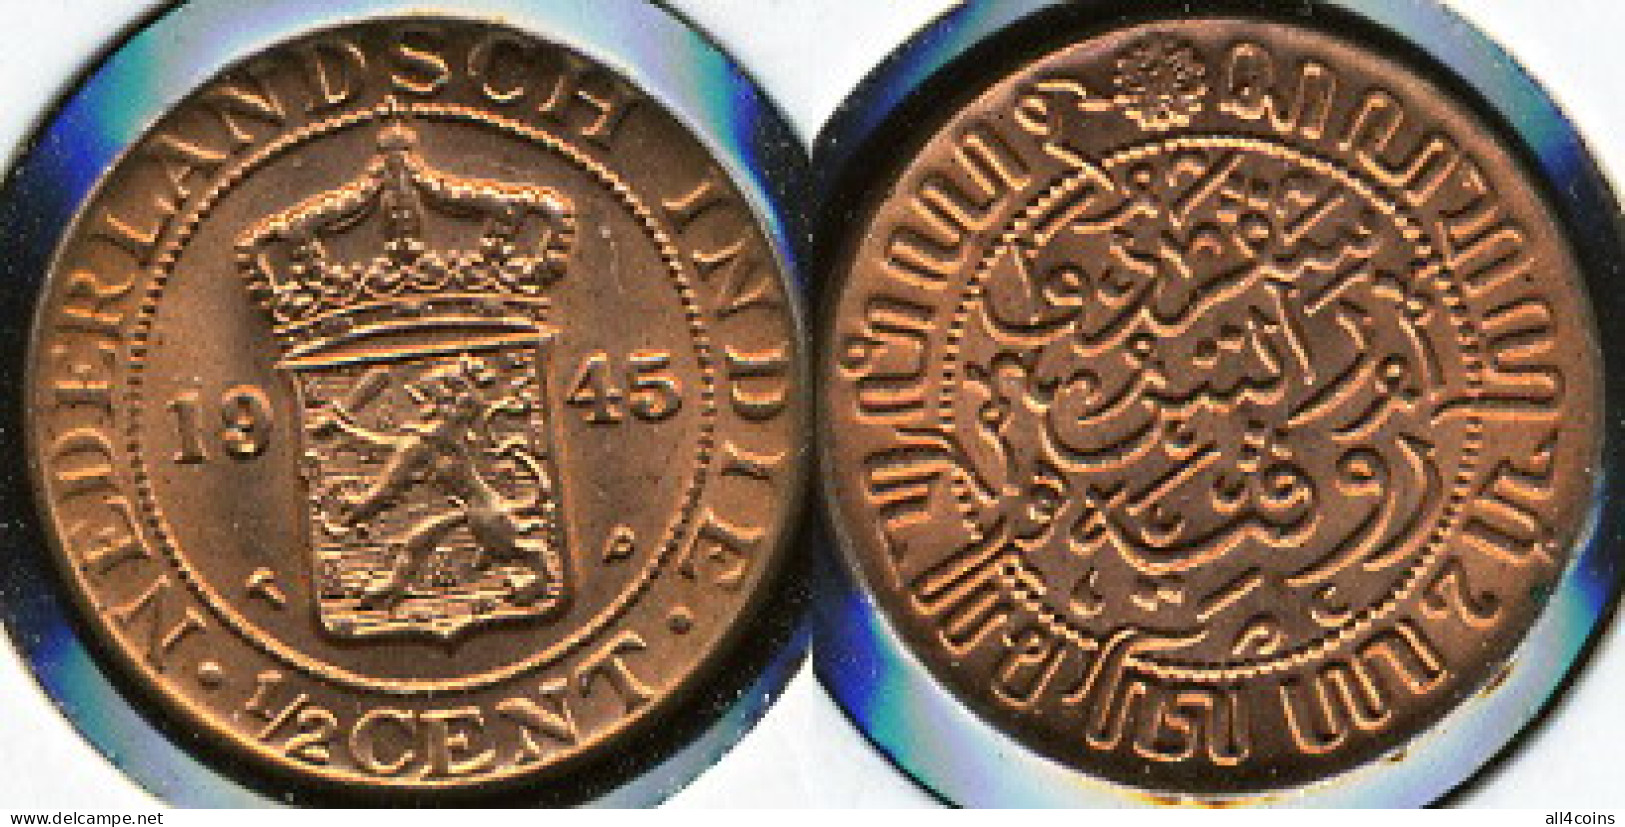 Netherlands East-Indies 1/2 Cent. 1945 (Coin KM#314.2. Unc) - Monedas Provinciales